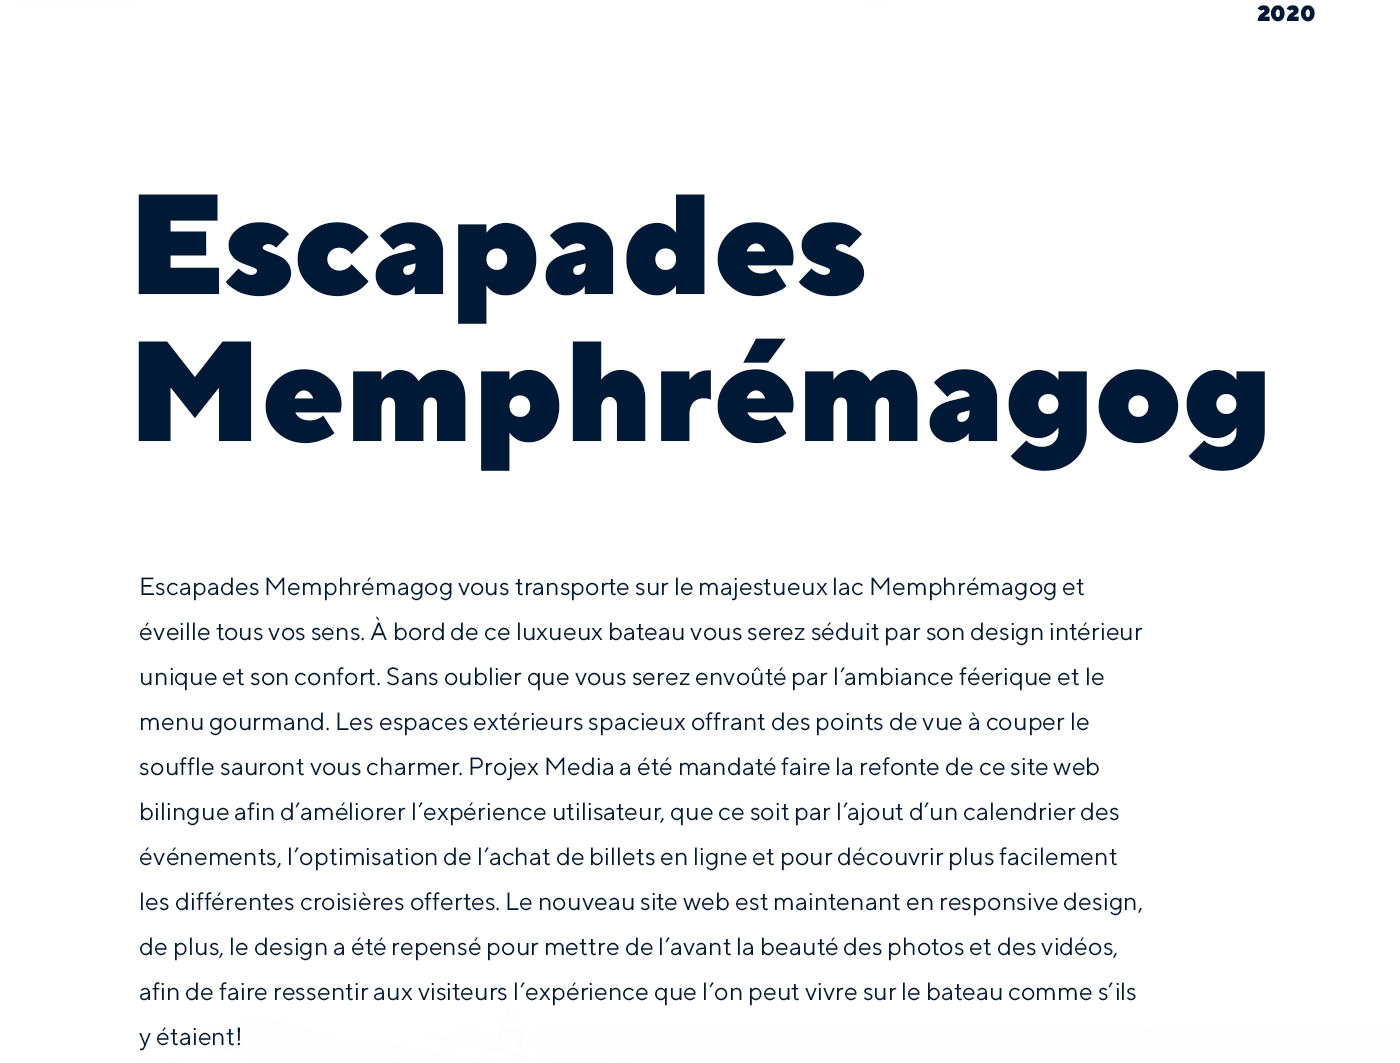 Site Web de Escapades Memphrémagog - Croisières gourmandes dans les Cantons-de-l'Est, Magog et Estrie / 2020 - Réalisation signée Projex Media